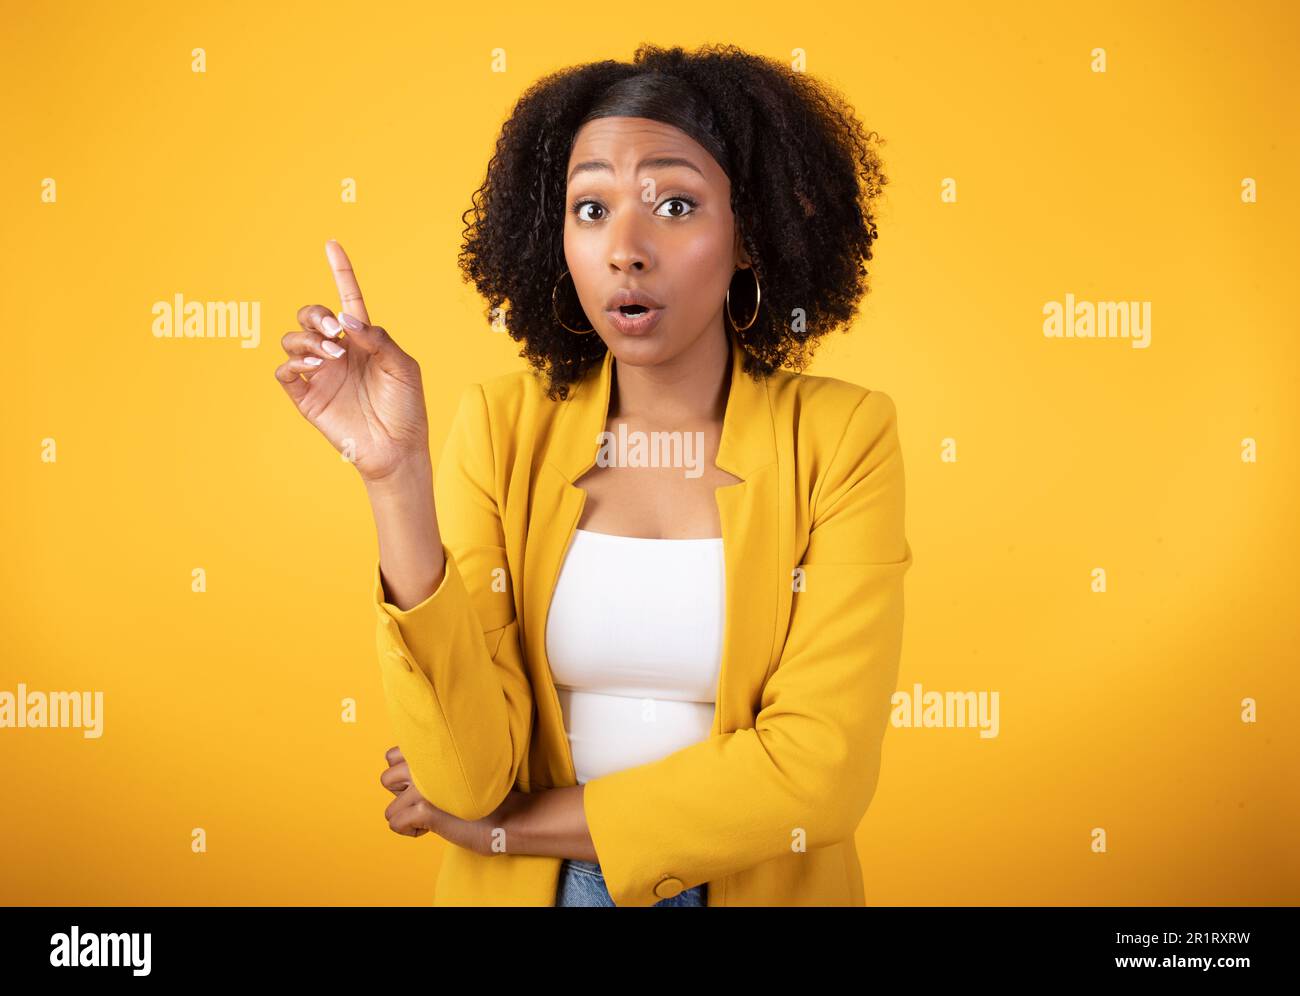 Moment Eureka. Une femme noire émotive qui pointe le doigt vers le haut et s'exclame, regardant l'appareil photo sur fond jaune Banque D'Images